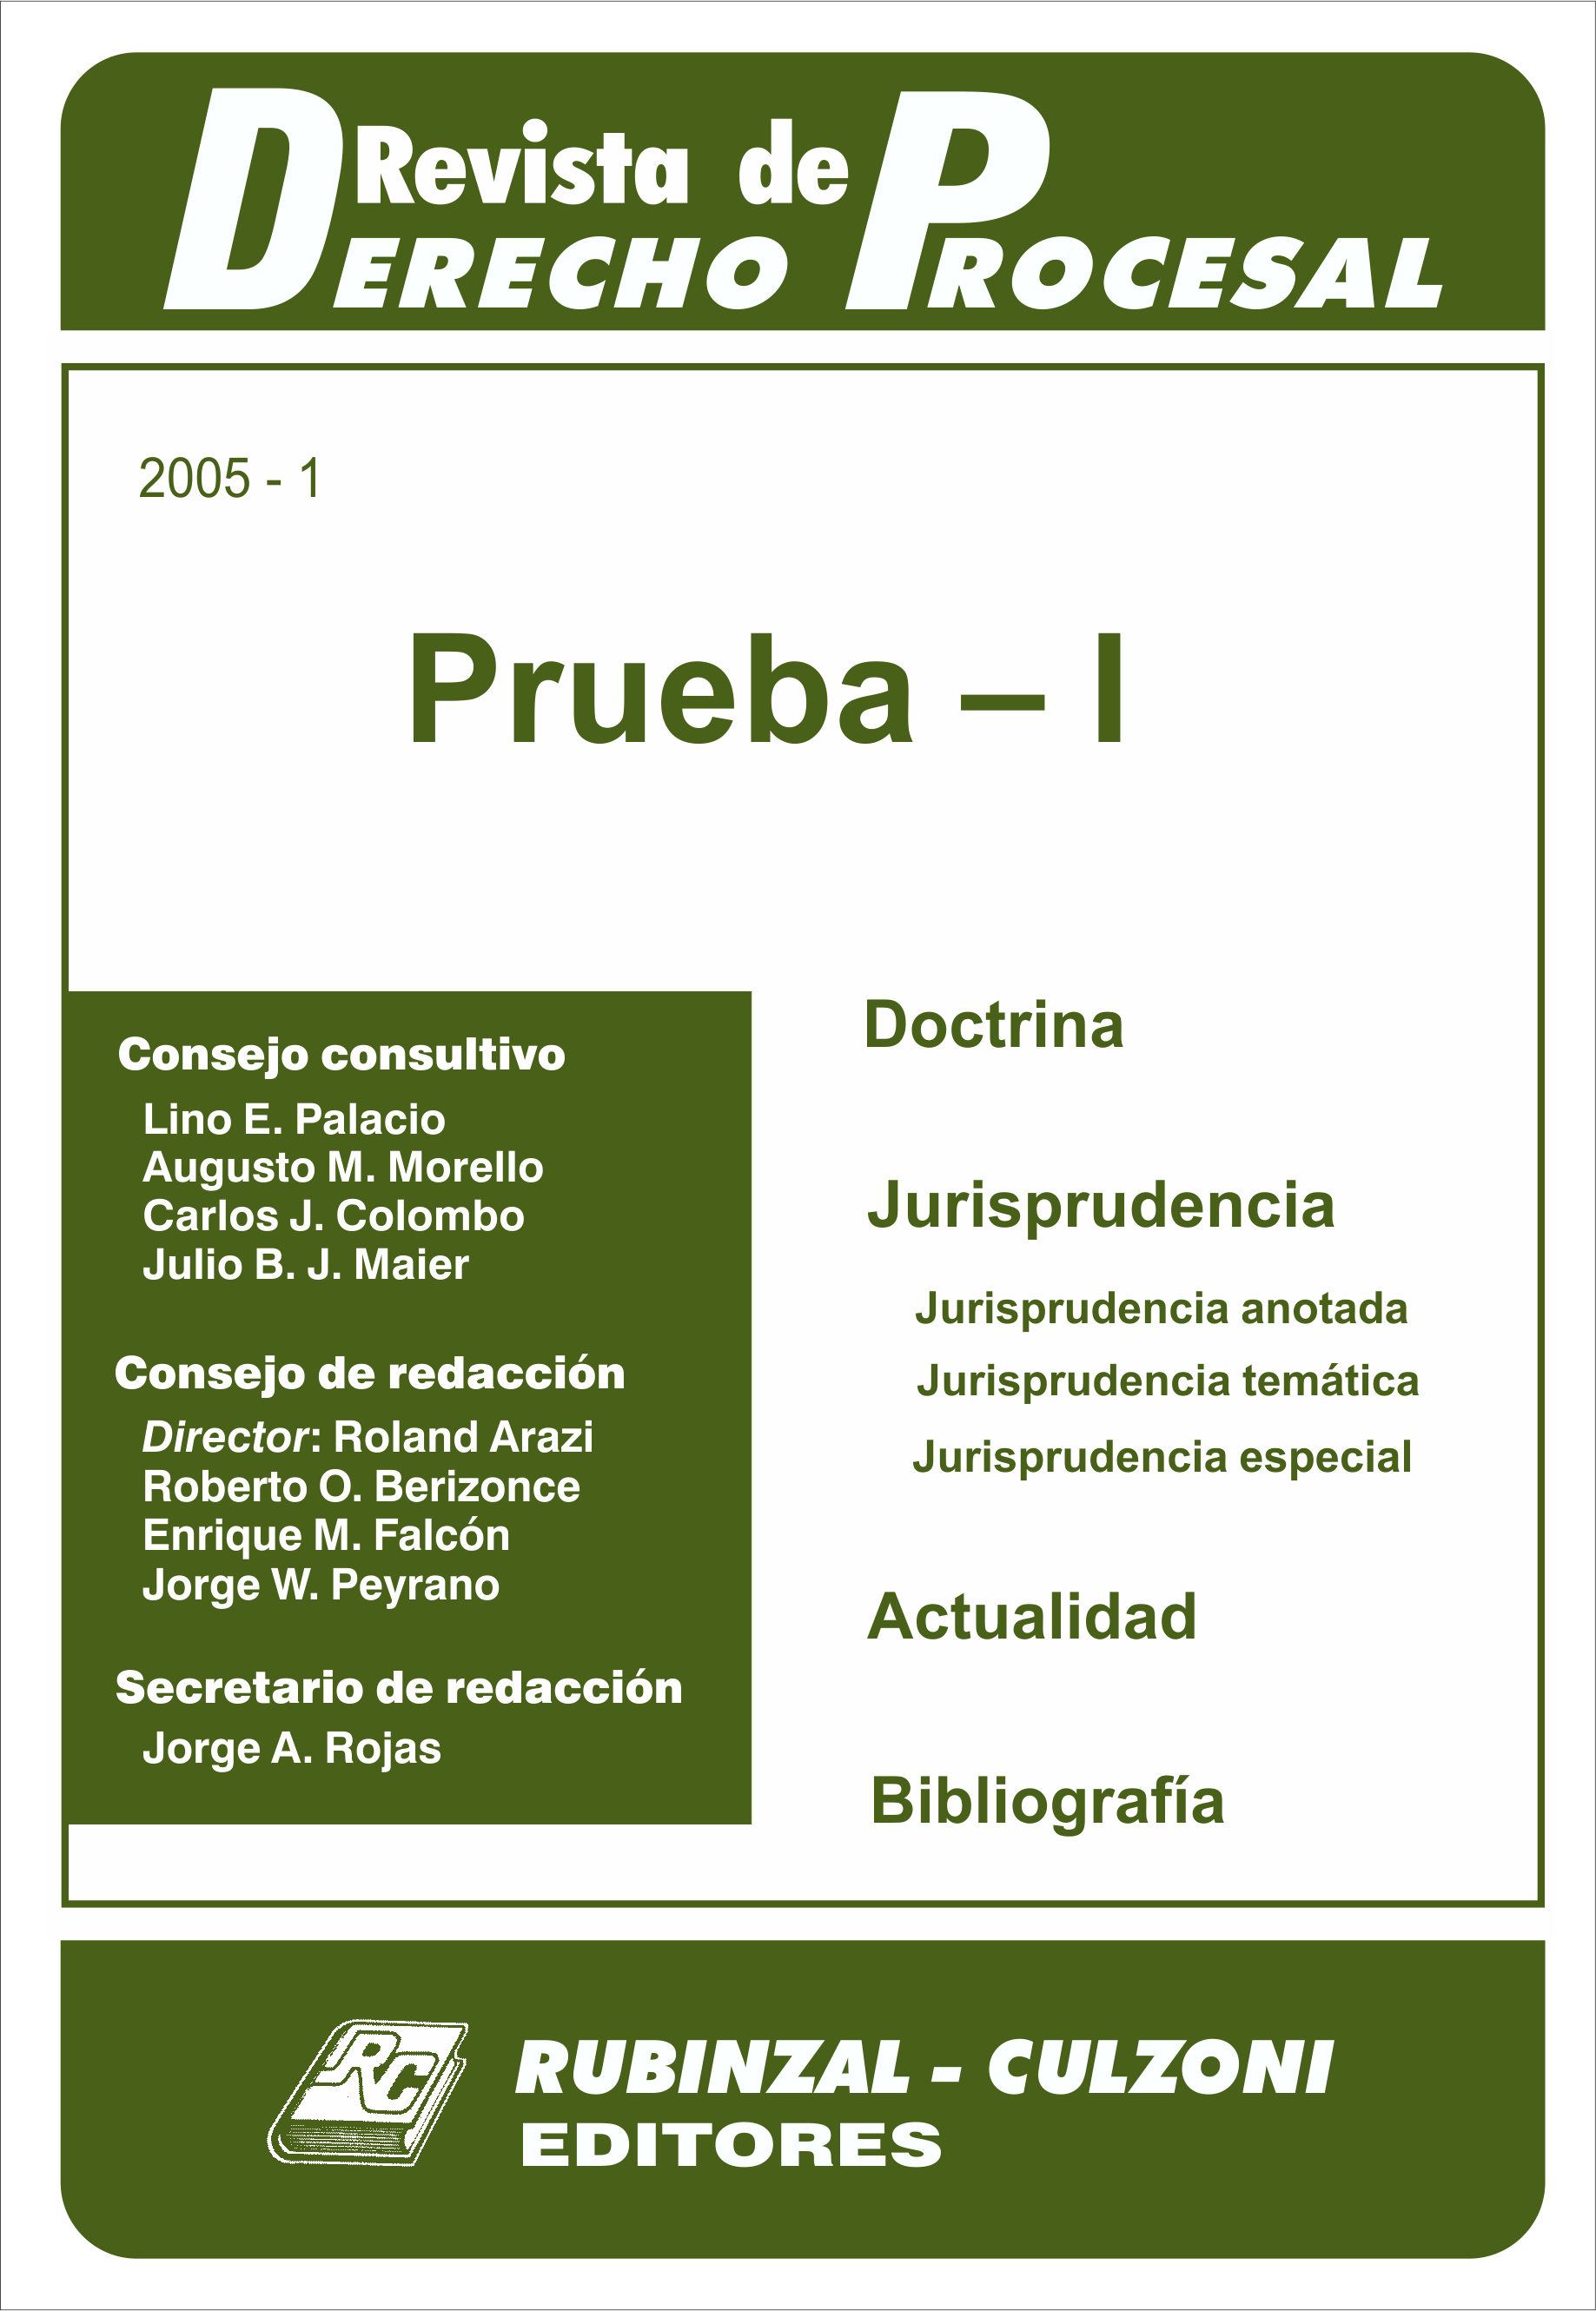  - Prueba - I. [2005-1]